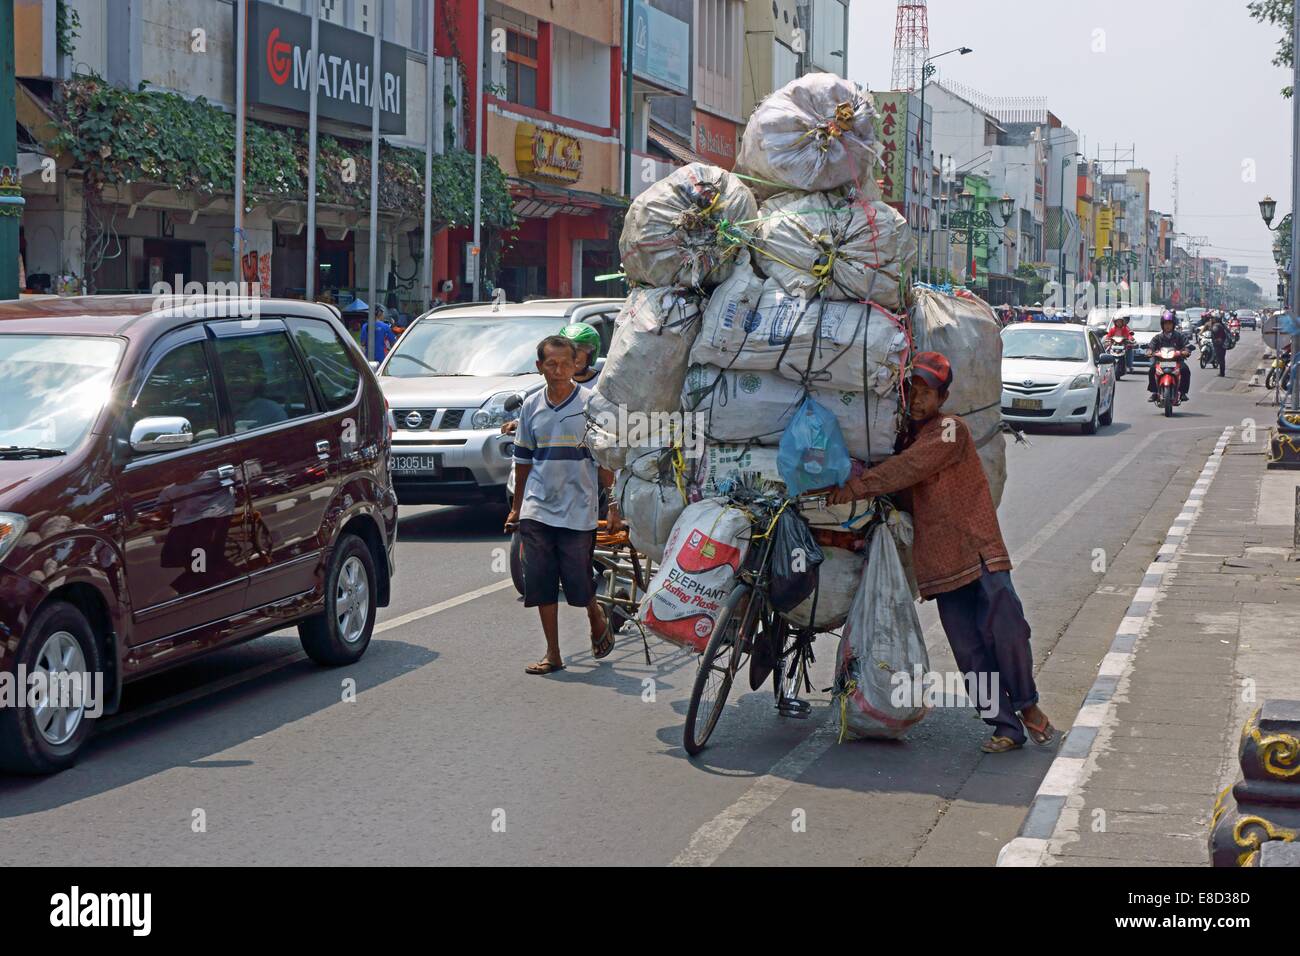 Der Mann unter Kontrolle zu sein scheint Schwierigkeiten das Fahrrad balancieren, als er die Ladung transportiert. Stockfoto